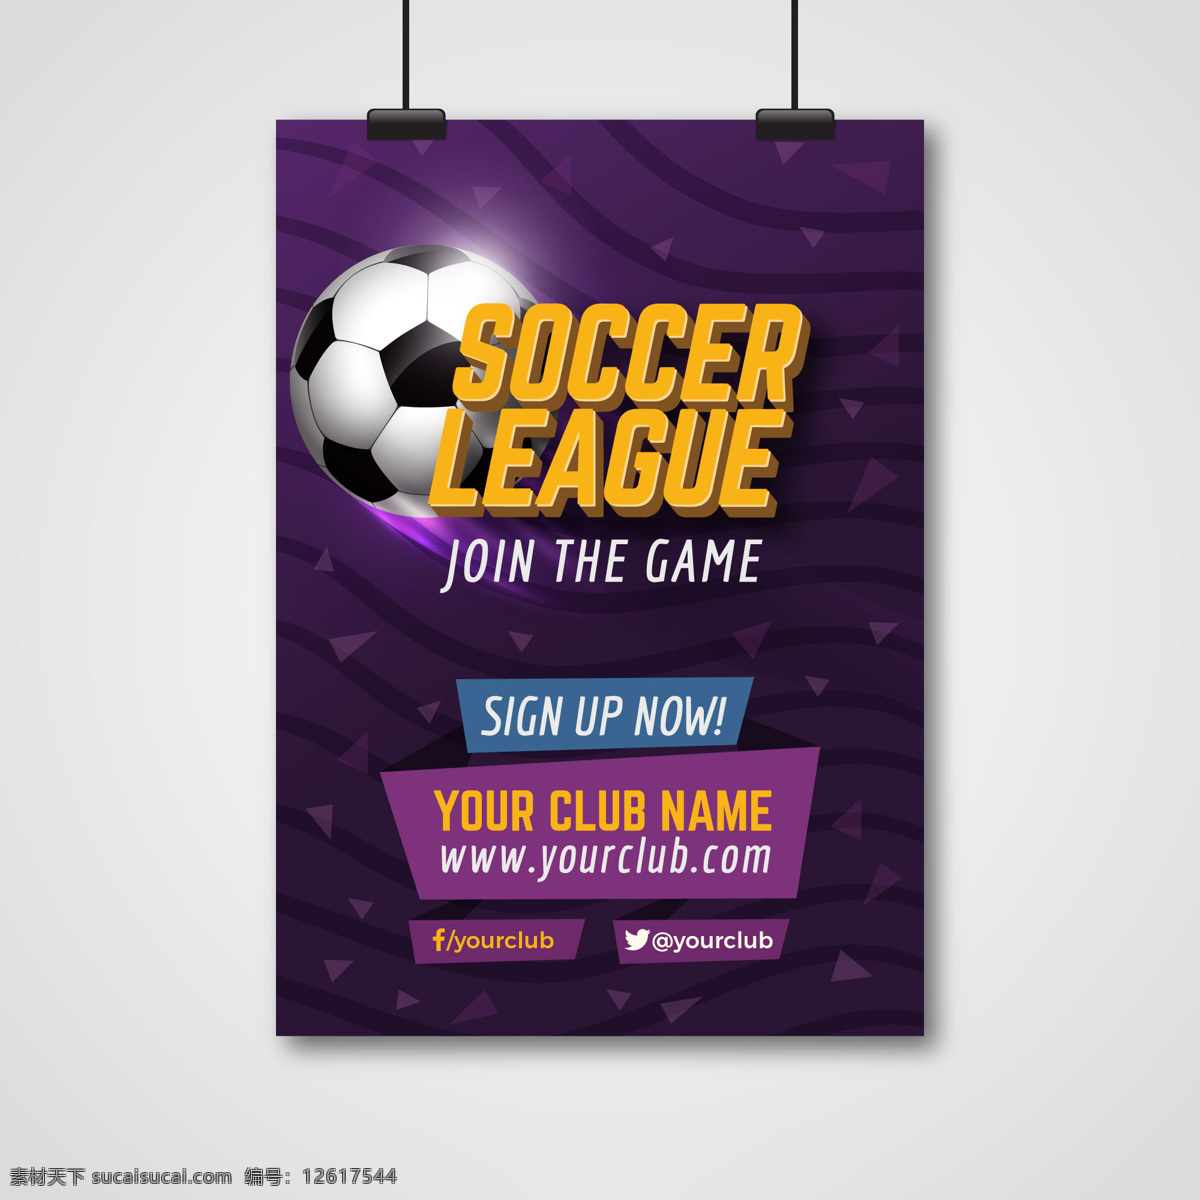 紫色 足球比赛 足球 足球矢量图 足球素材 足球图案 足球设计